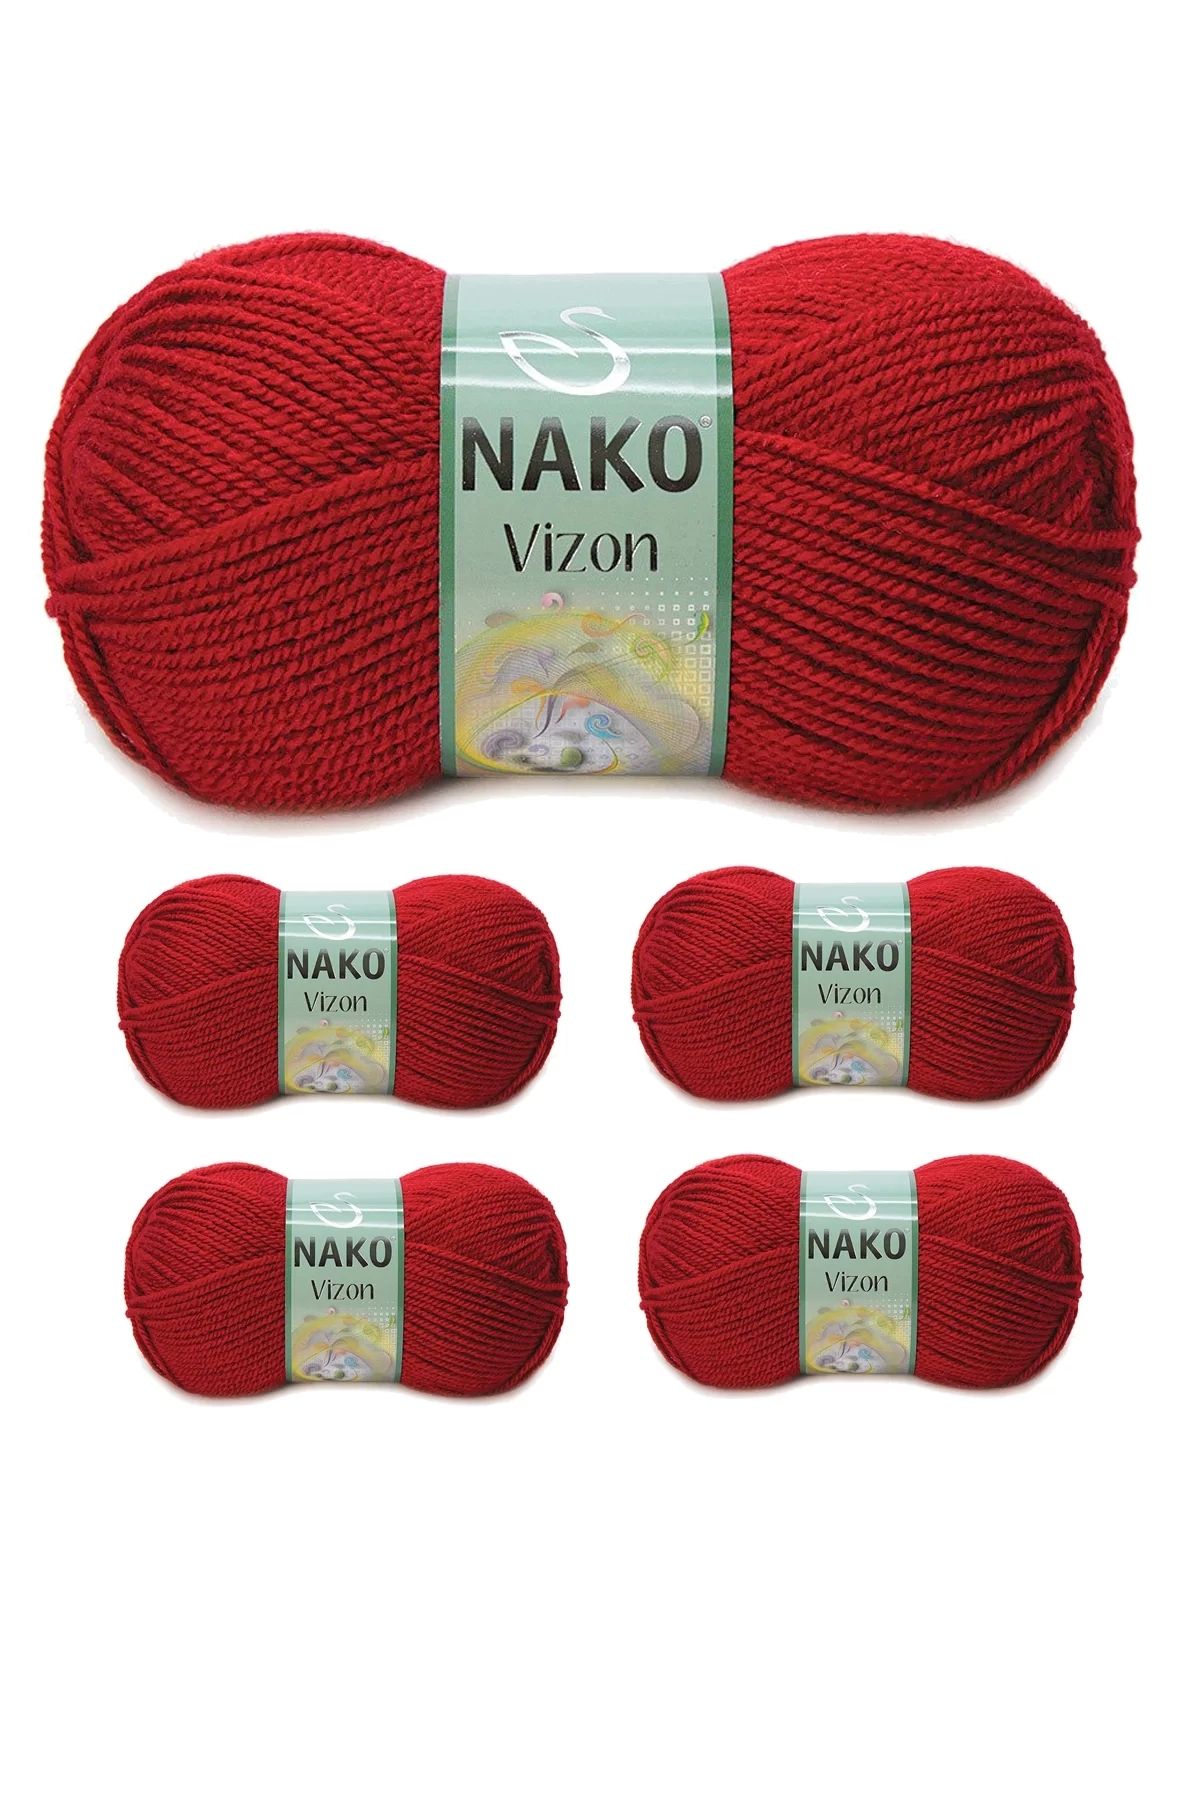 Nako 5 Adet Vizon Premium Akrilik El Örgü Ipi Yünü Renk No:1175 Koyu Kırmızı